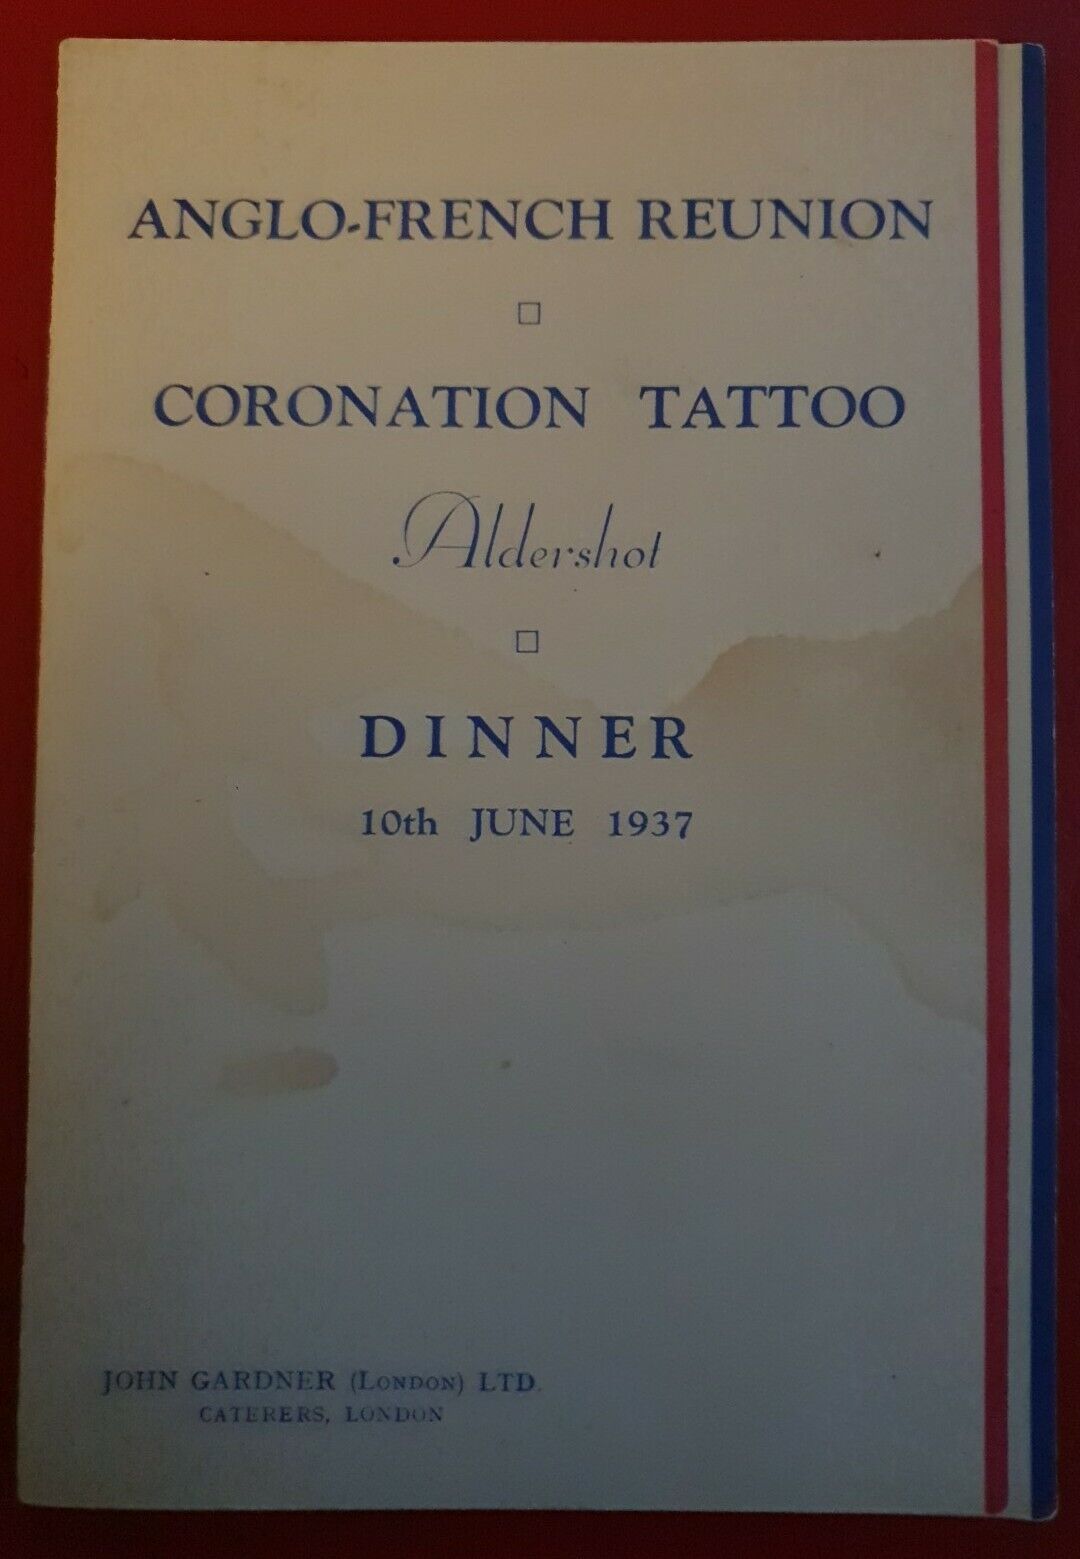 John Gardner London – Menu, Anglo _ French Meeting Coronation Tattoo Aldershot,